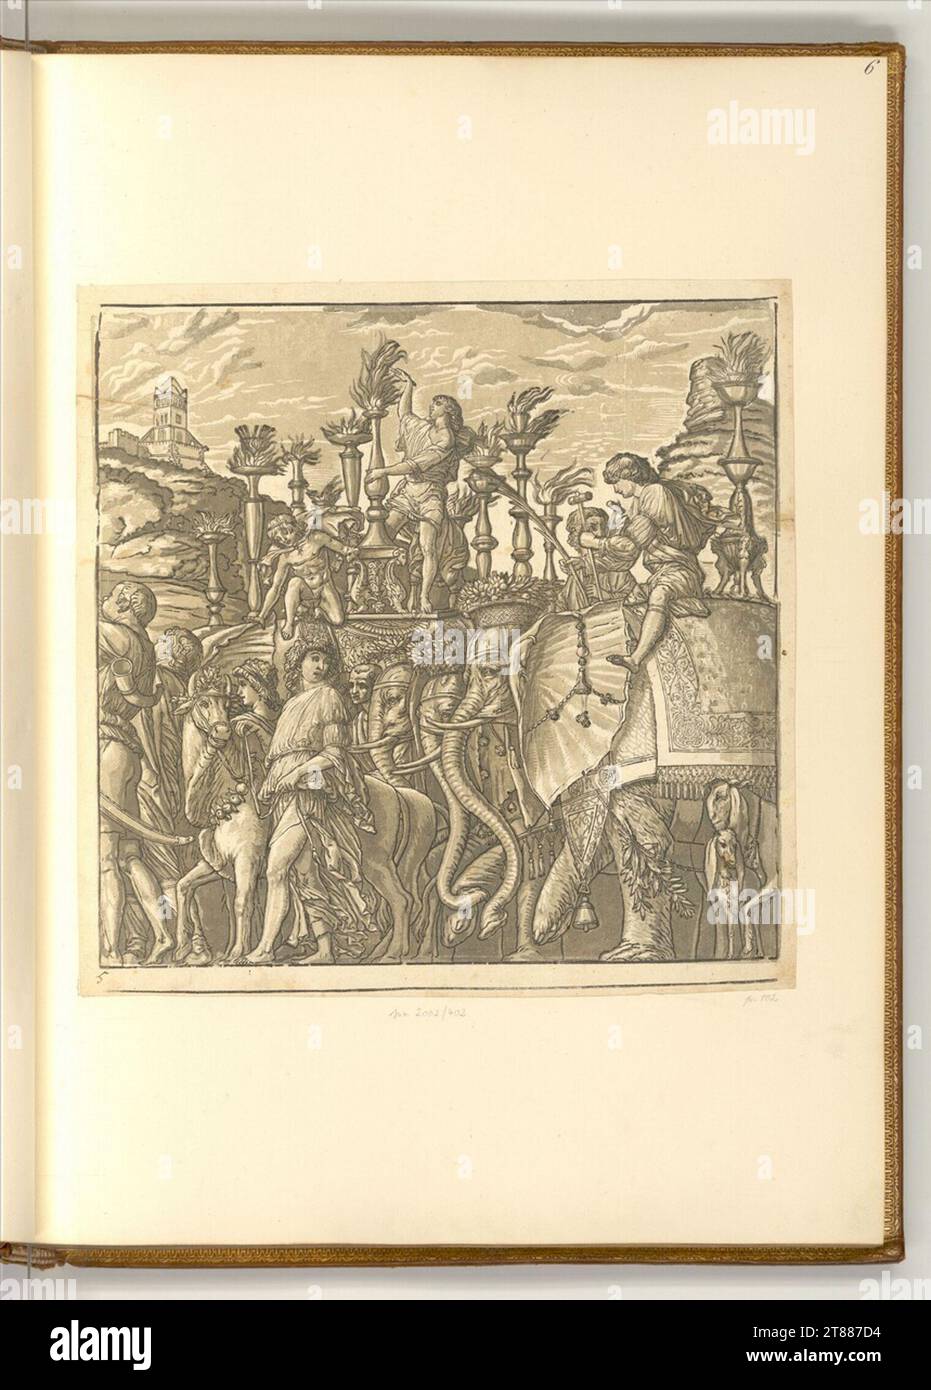 Andrea Andreani le triomphe de Jules César : Blatt 5. Clair OBSCUR gravure sur bois de quatre plaques 1599, 1599 Banque D'Images